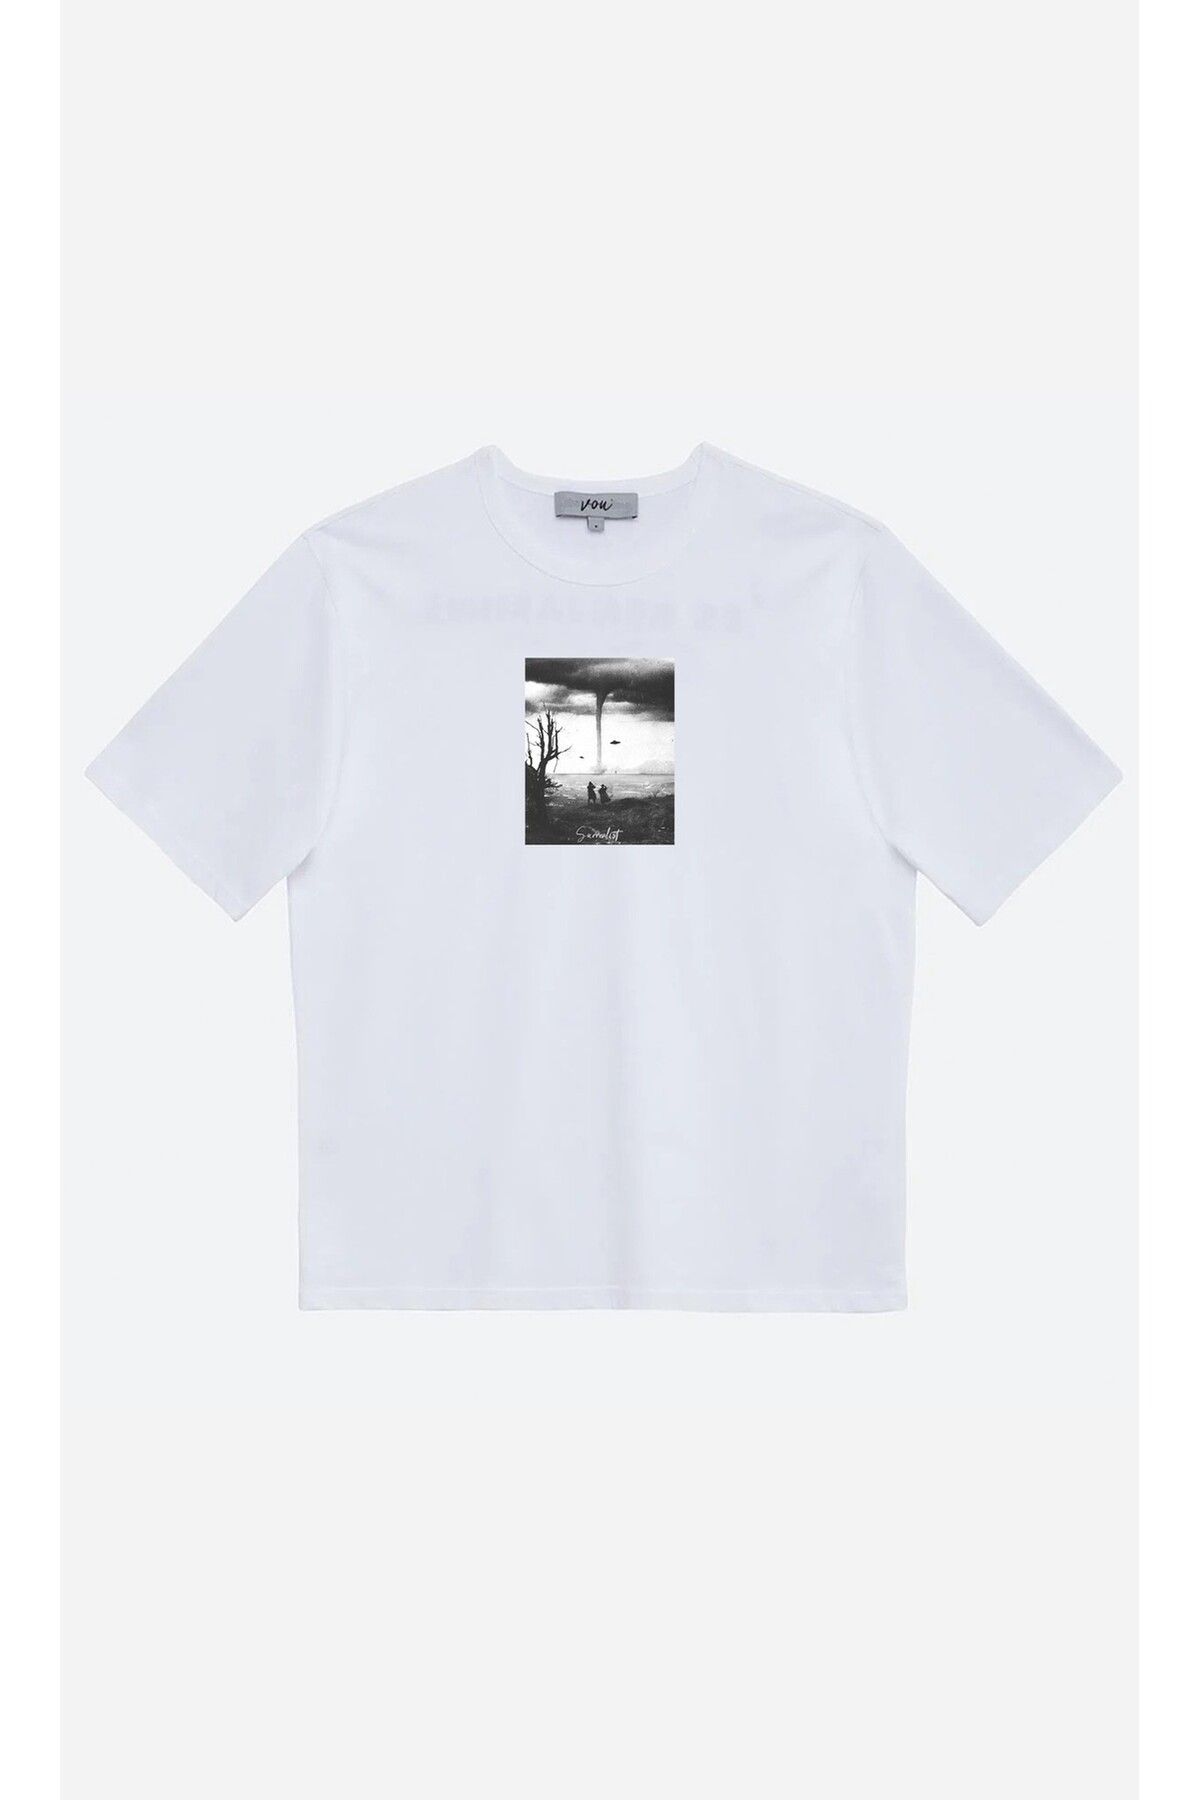 VOU 1020- Surrealist Oversize Unisex T-Shirt